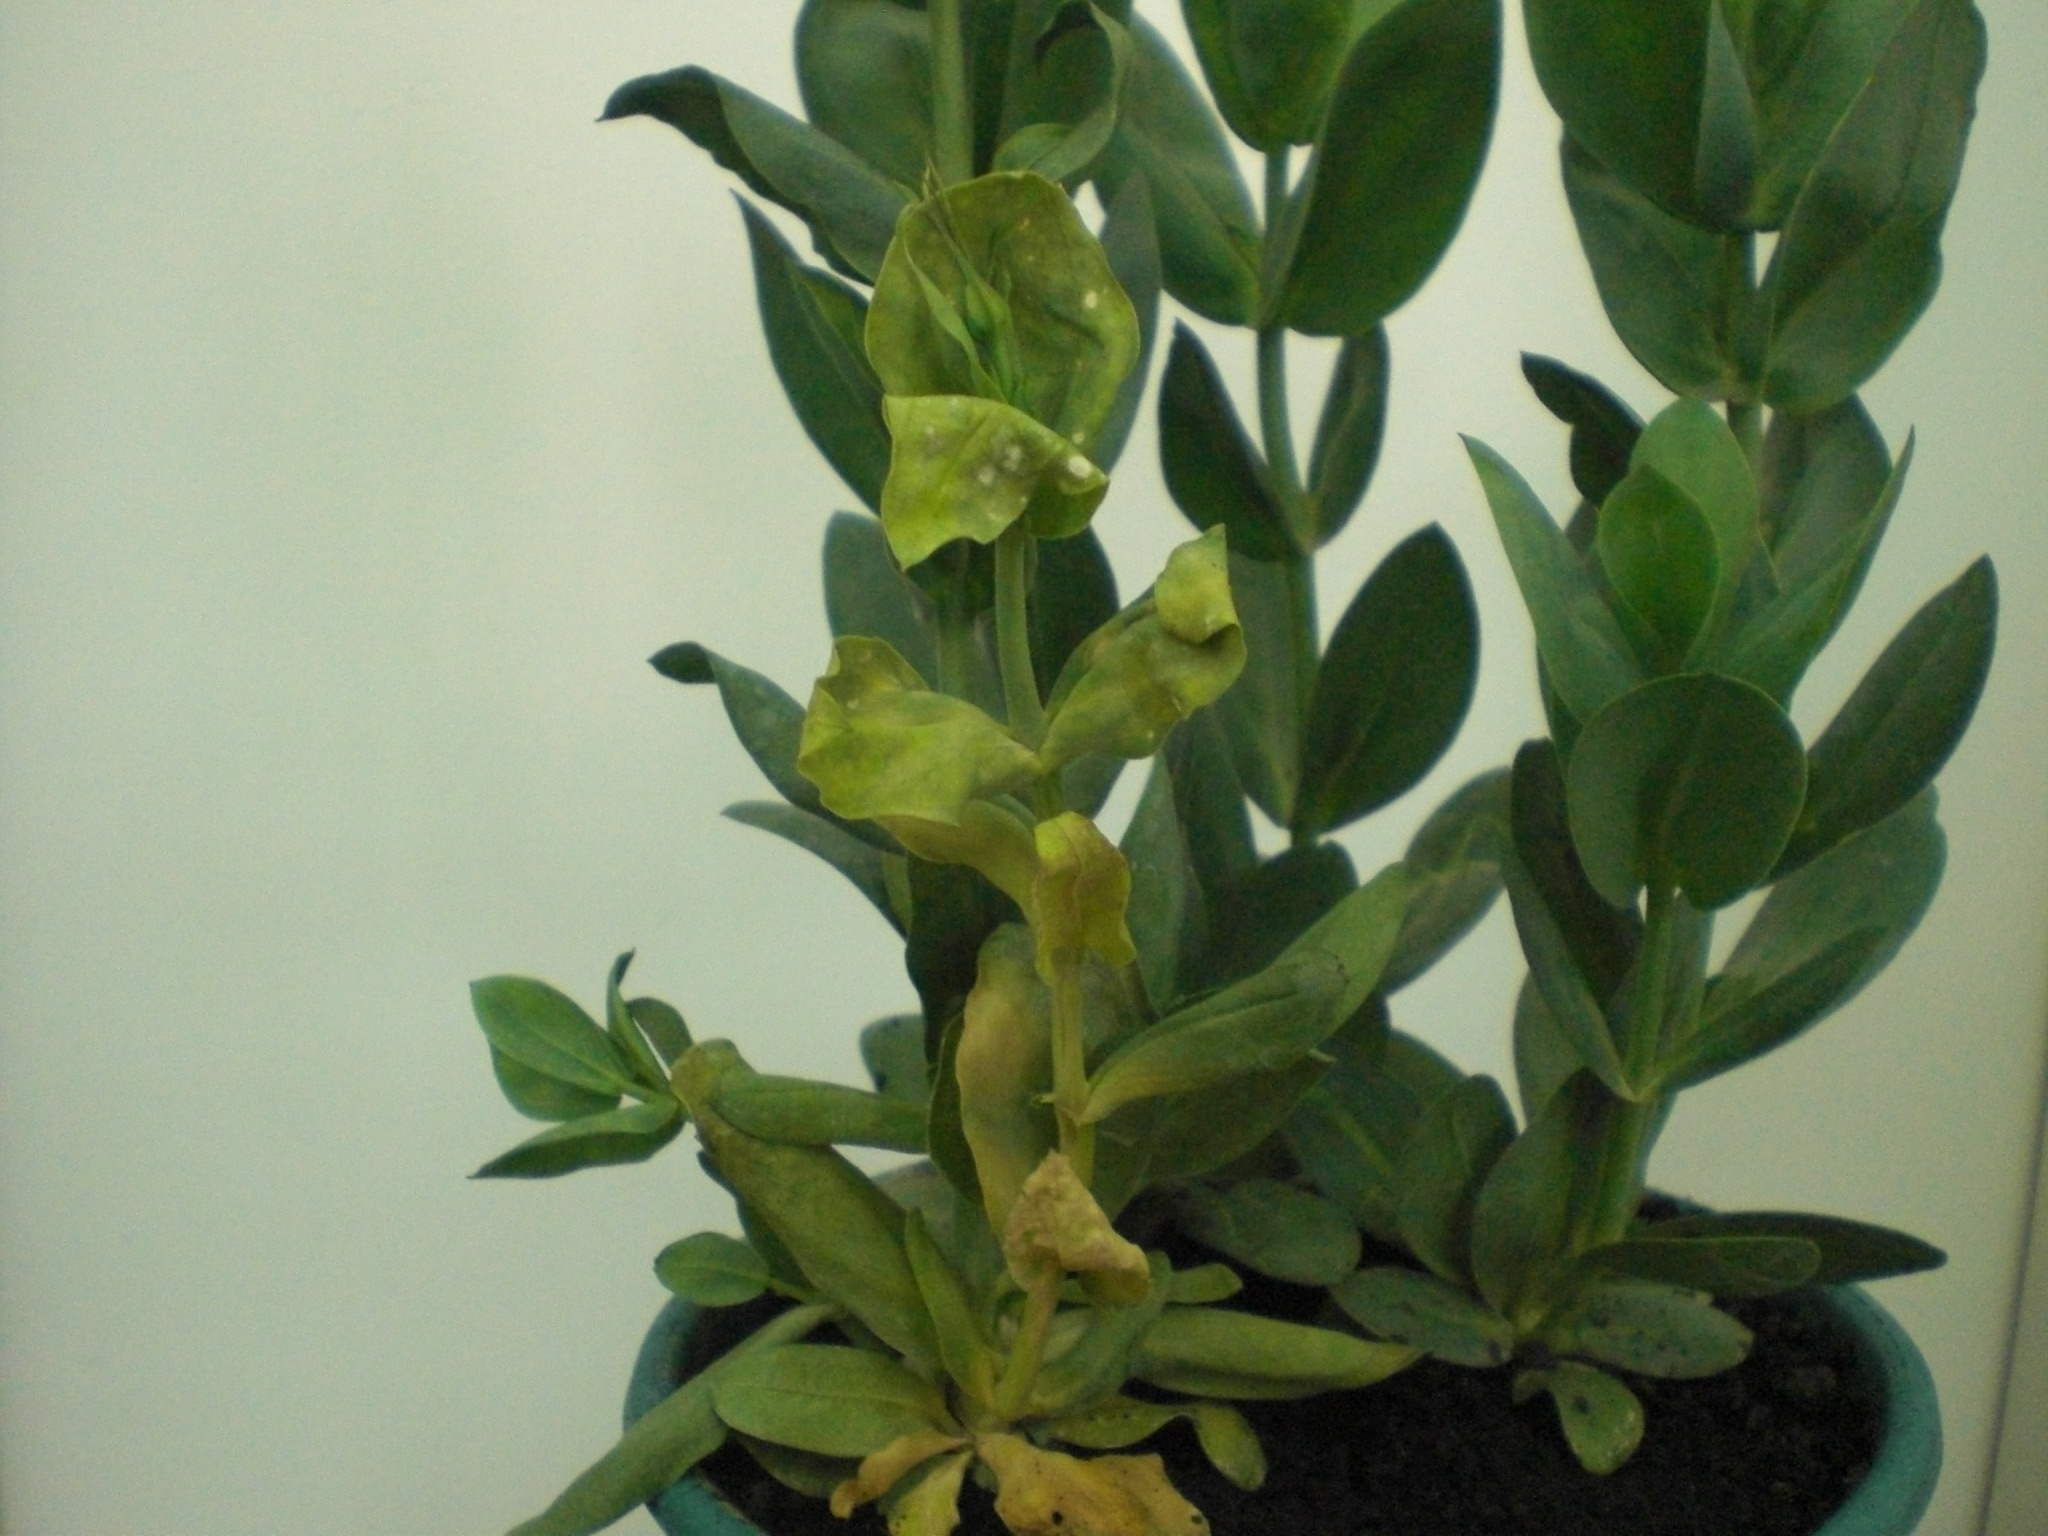 <p><b><p>Planta de <em>Eustoma grandiflorum </em>infectada pelo Chrysanthemum stem necrosis virus, apresentando necrose nas folhas e caule. </p></b></p><p>Autor: L. M. L. Duarte</p>